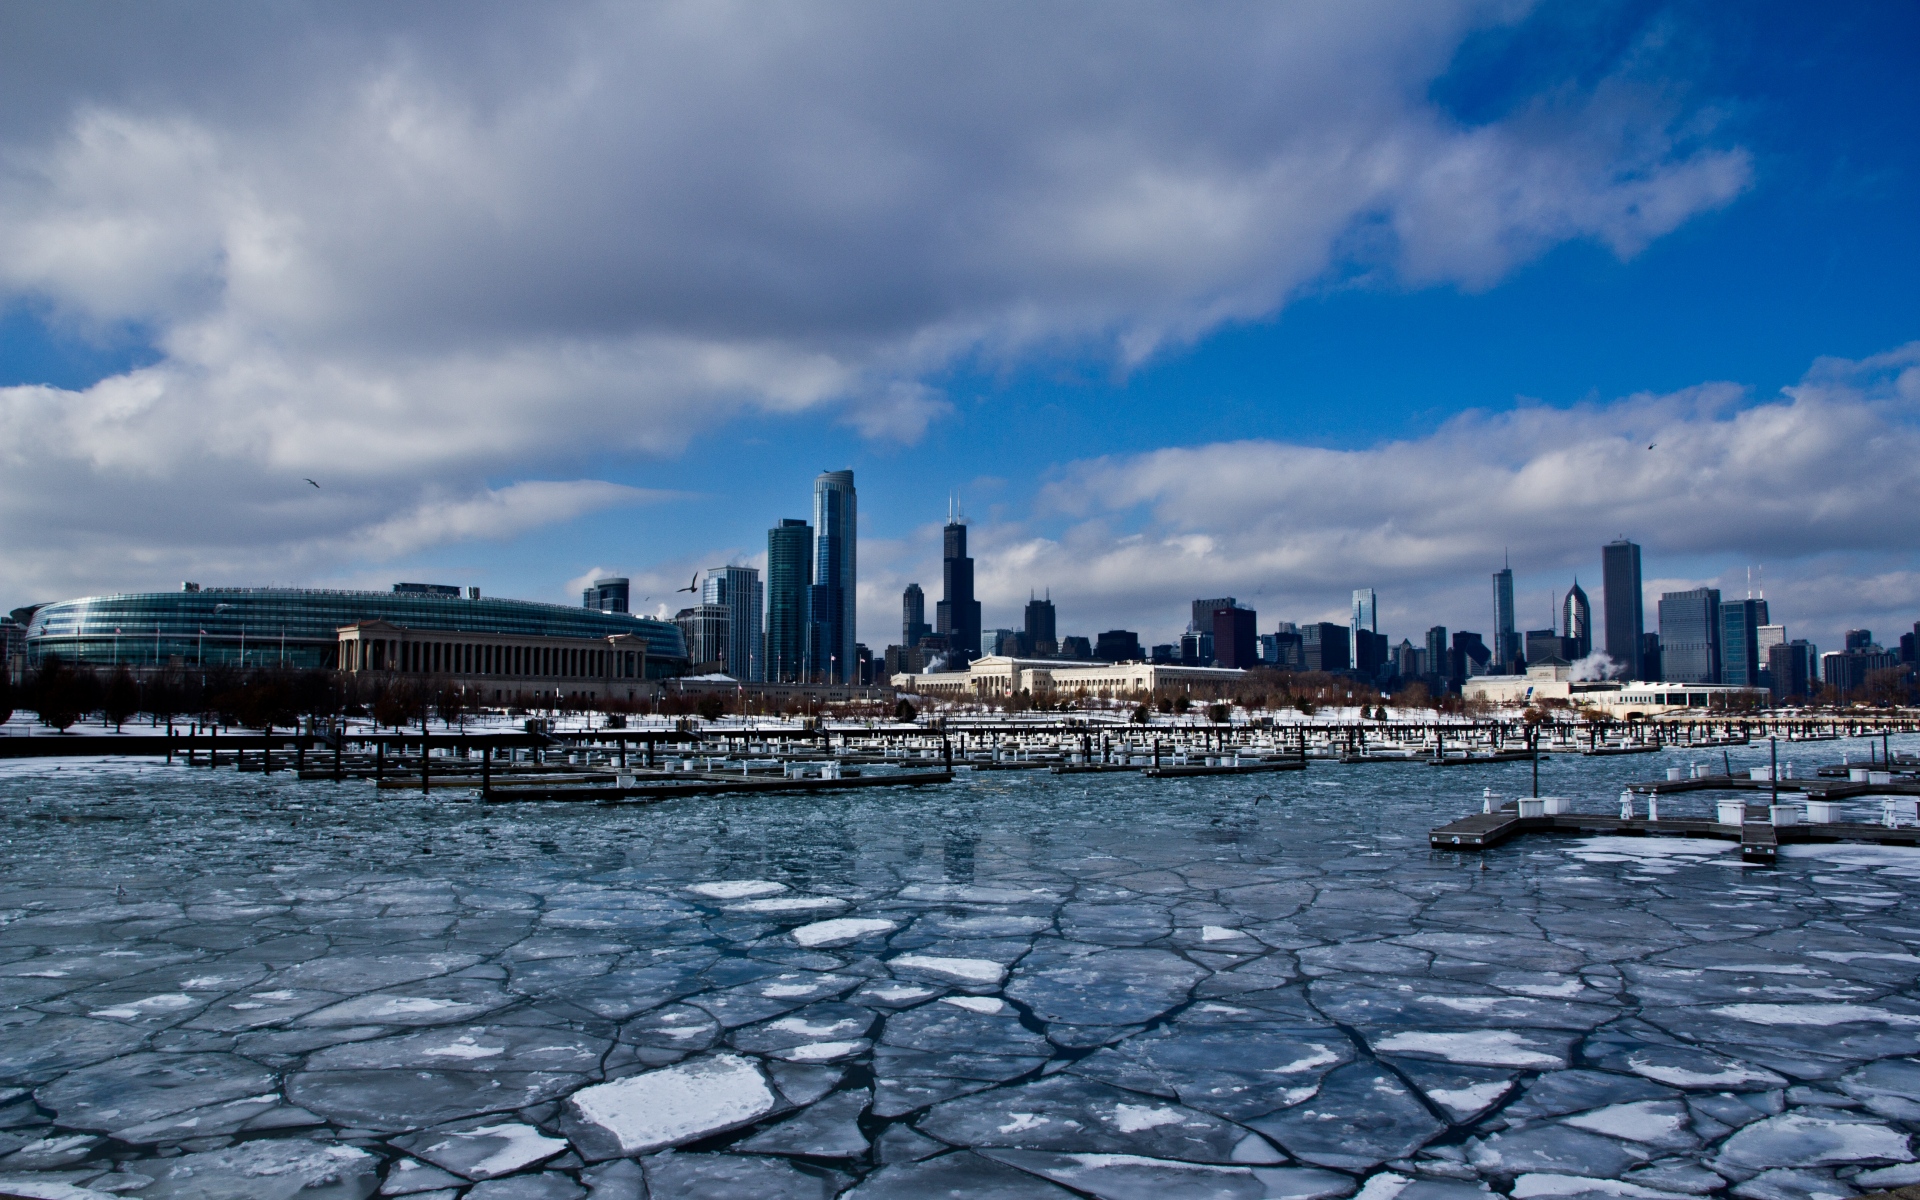 Картинки Чикаго, США, Иллинойс, Америка, Здния, небоскребы, лед, порт, зима, здание фото и обои на рабочий стол